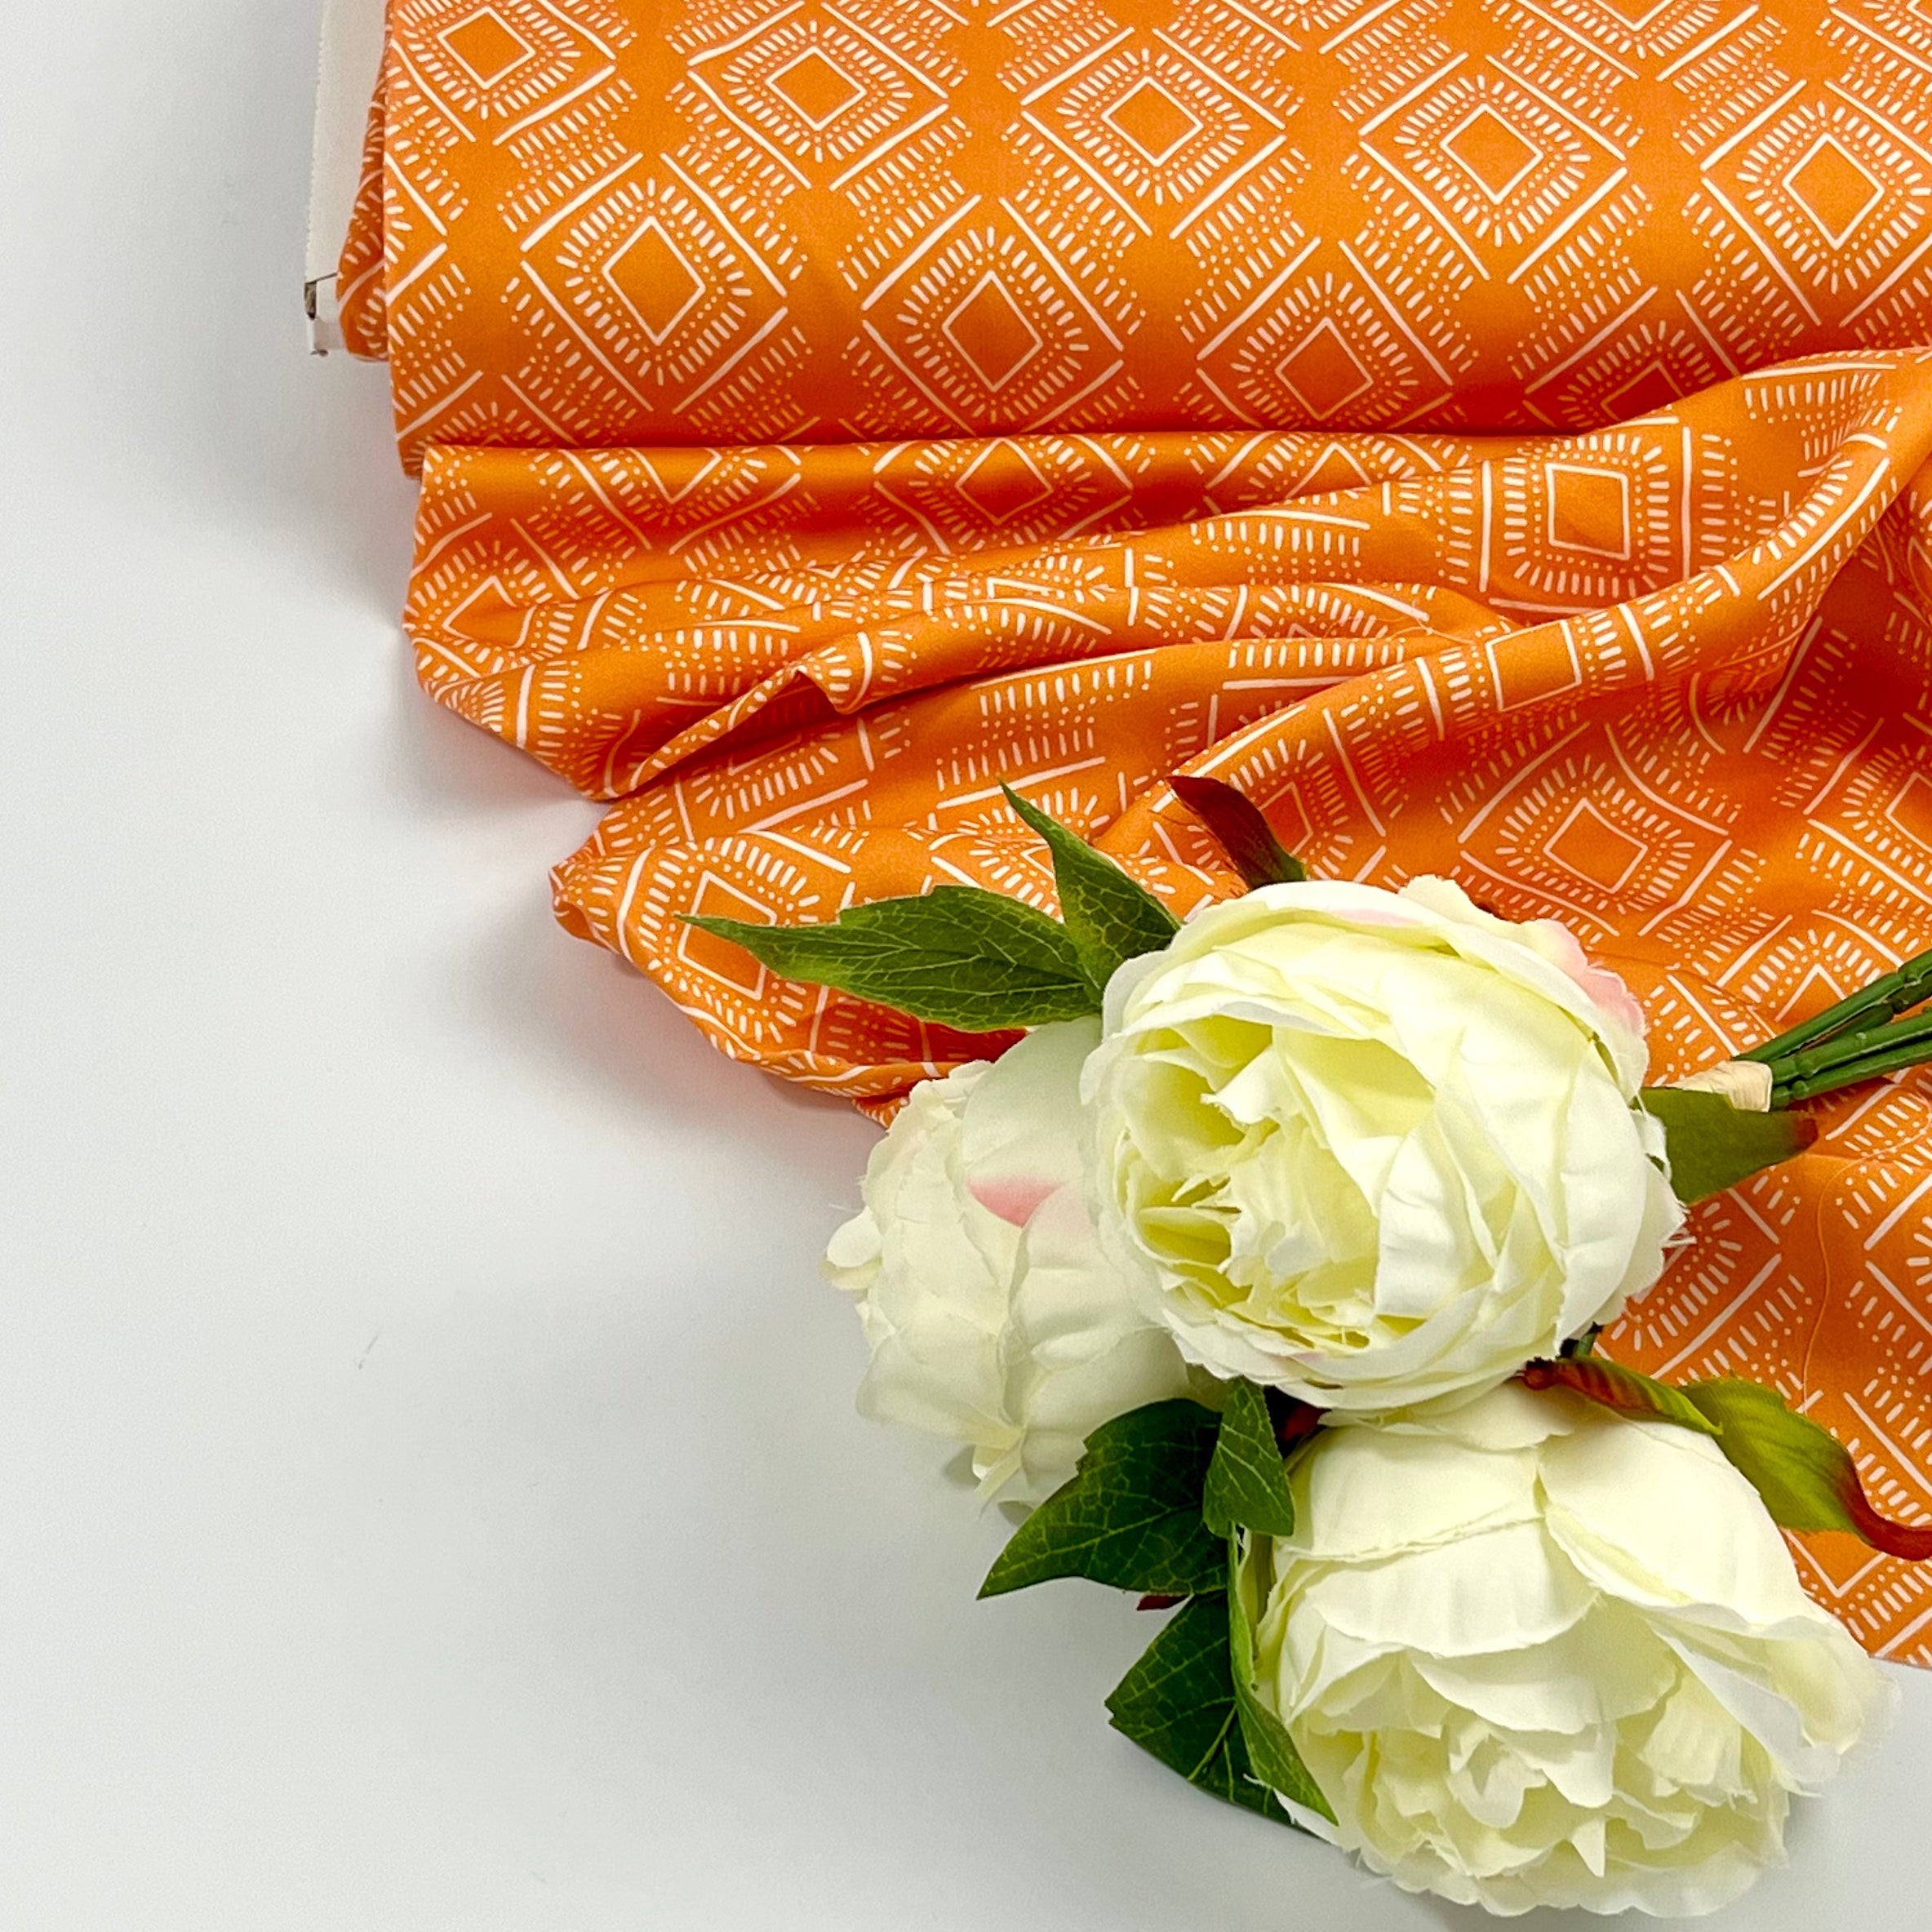 Tencelsatin - Rhonda Ikat Marigold Fabric poshpinks